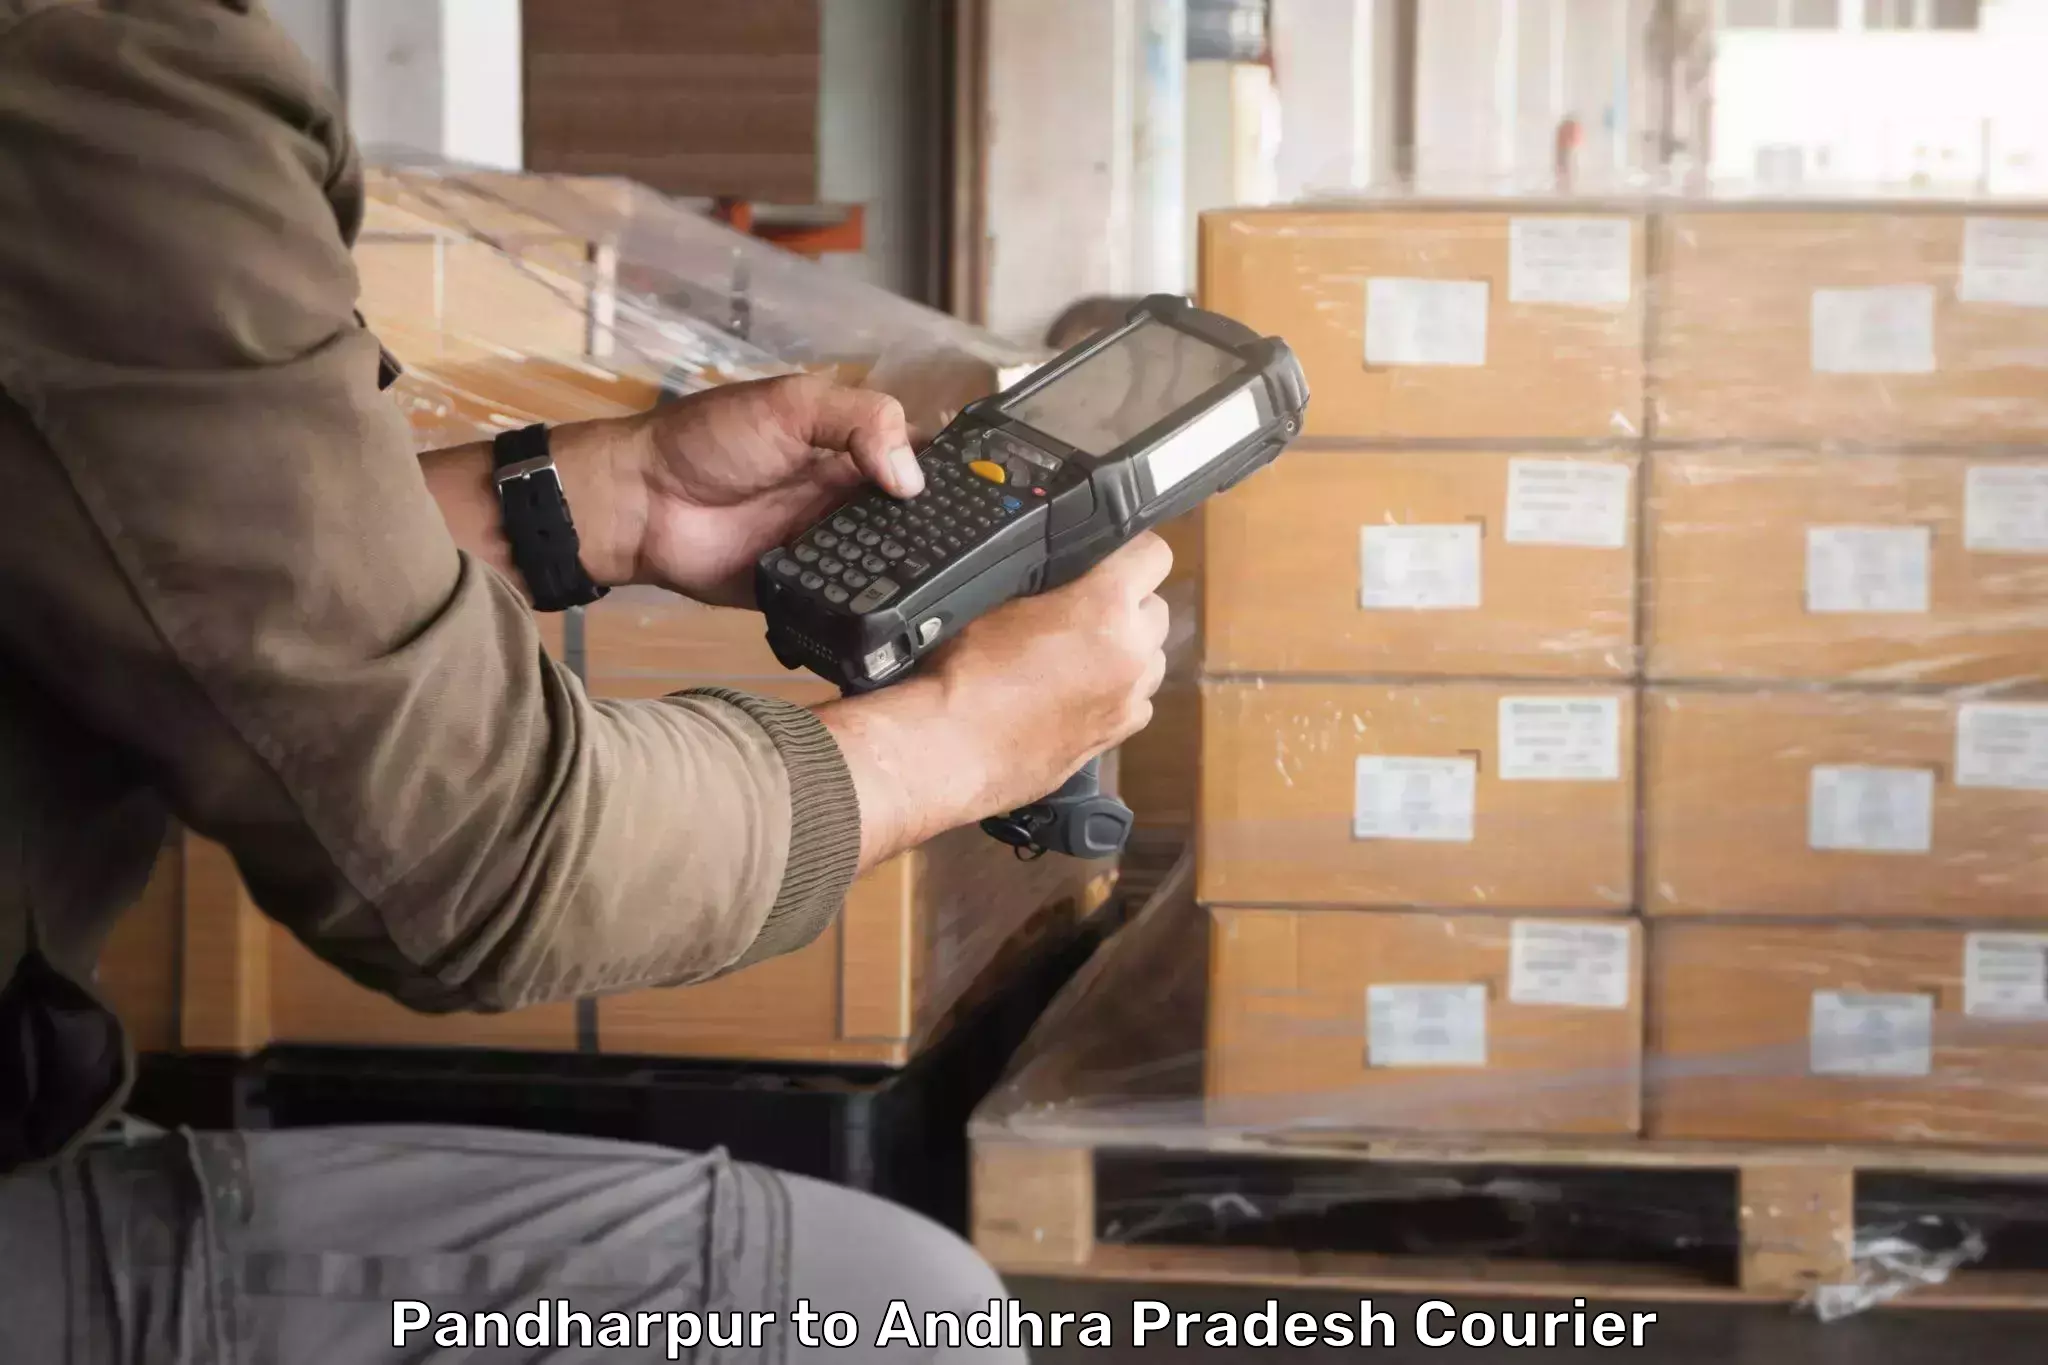 24-hour courier service Pandharpur to Vissannapeta